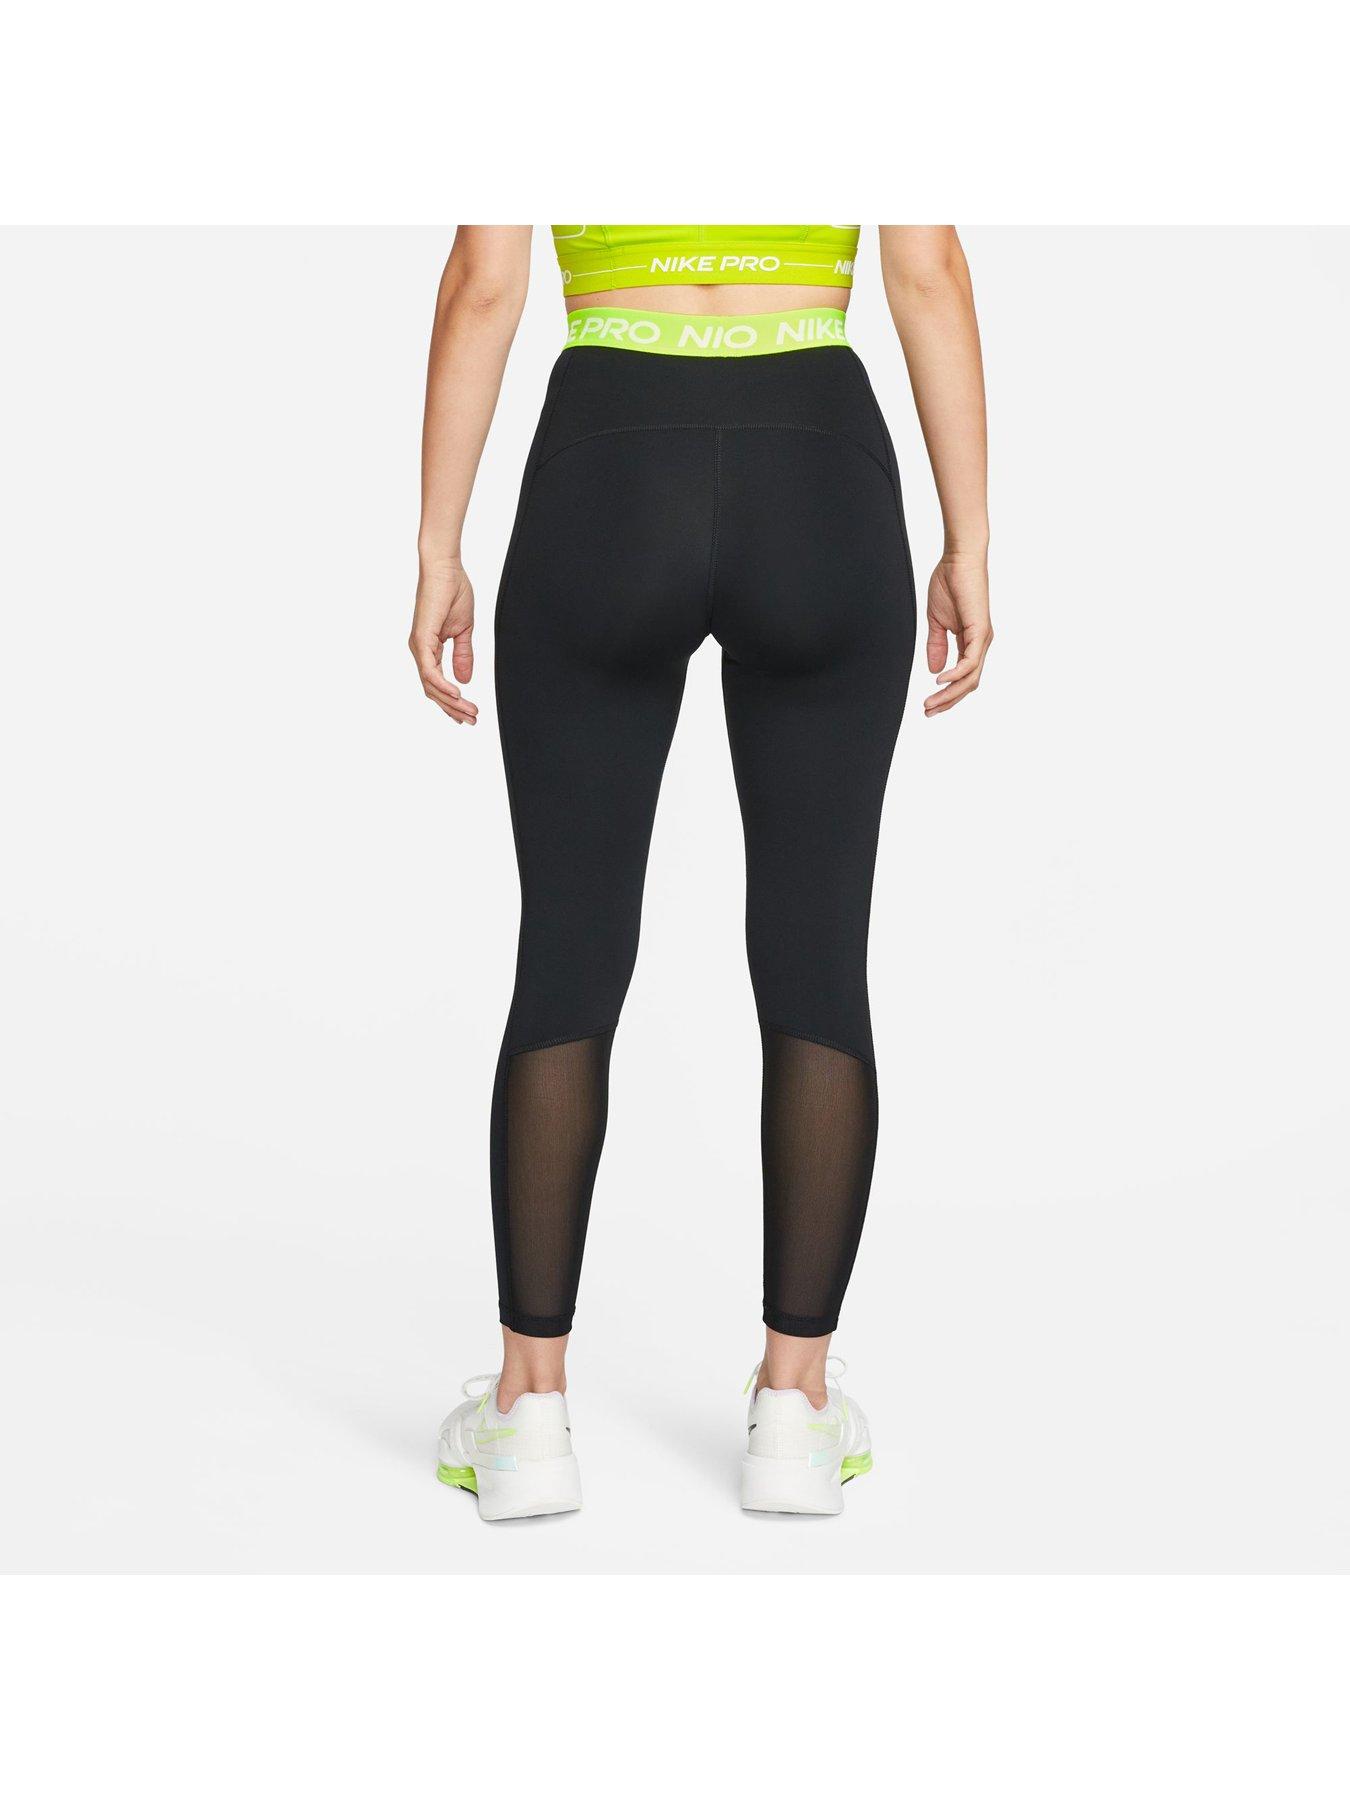 Nike Pro 365 Women's High-Waisted 7/8 Mesh Panel Leggings - Black